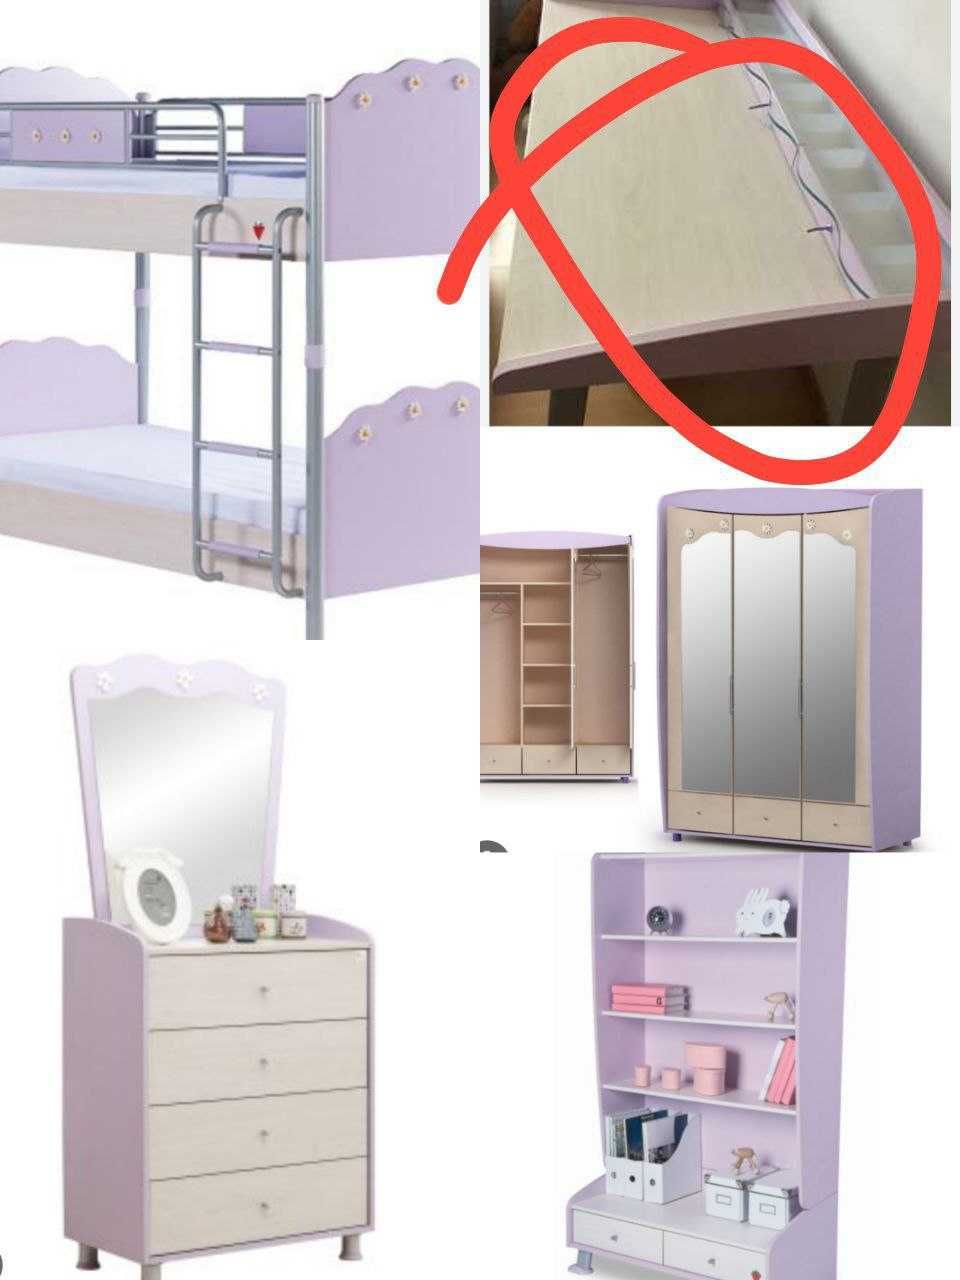 Мебель, гарнитур для детсккой комнаты (пр. Турция) двухярусная кровать